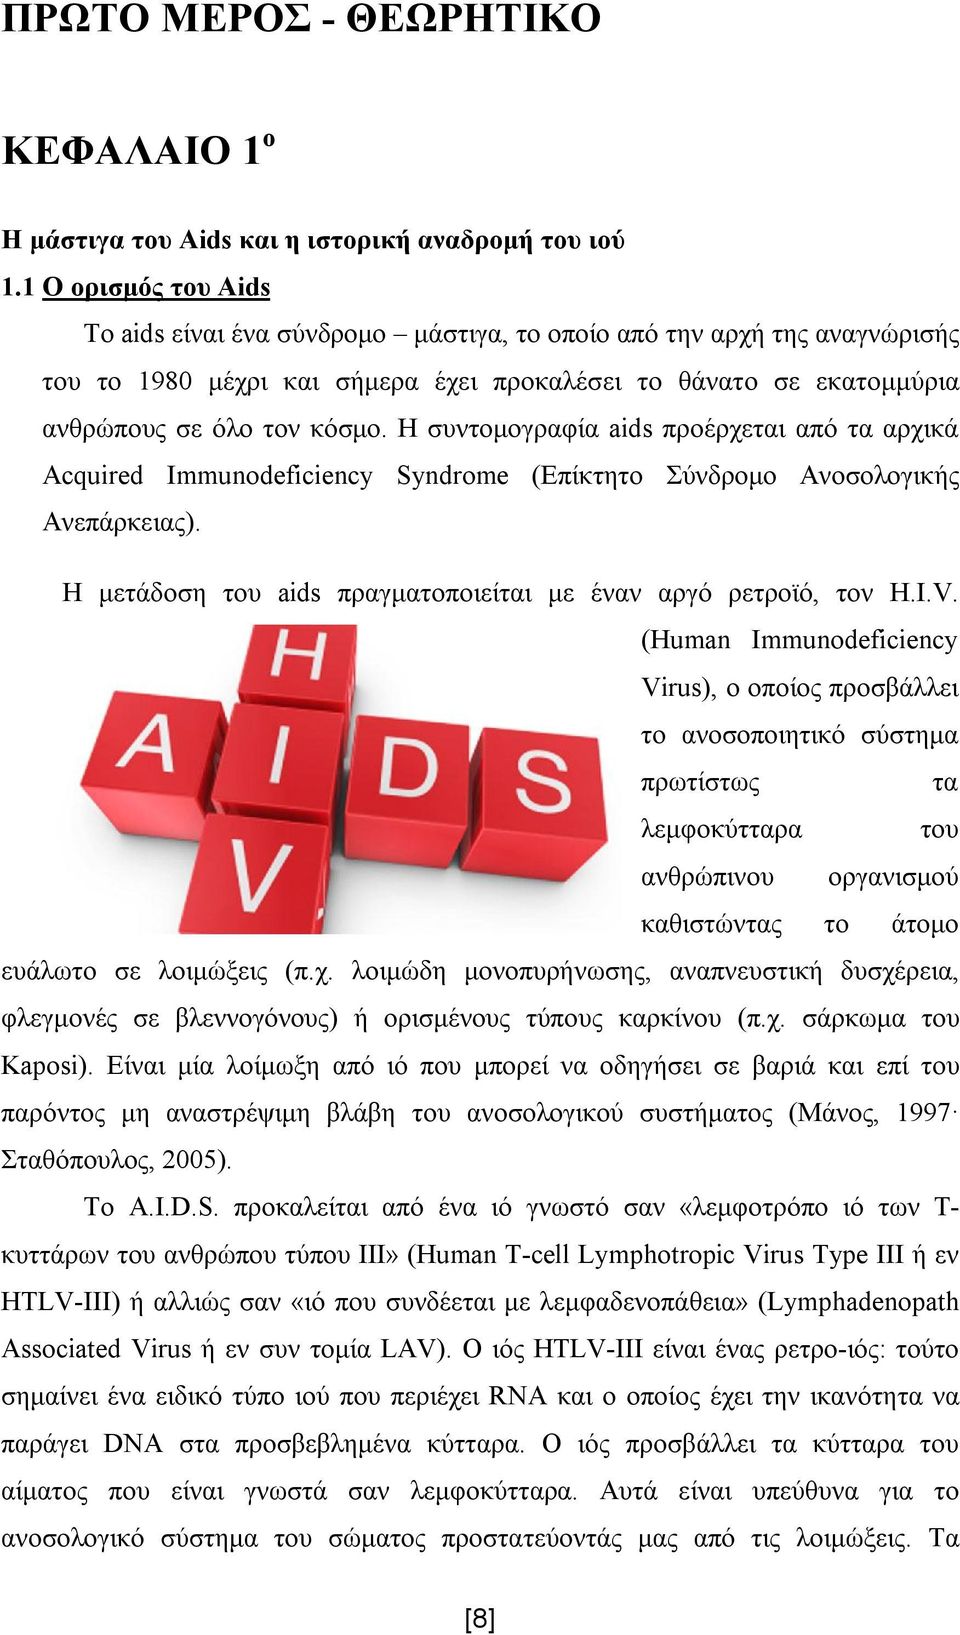 Η συντομογραφία aids προέρχεται από τα αρχικά Acquired Immunodeficiency Syndrome (Επίκτητο Σύνδρομο Ανοσολογικής Ανεπάρκειας). Η μετάδοση του aids πραγματοποιείται με έναν αργό ρετροϊό, τον H.I.V.